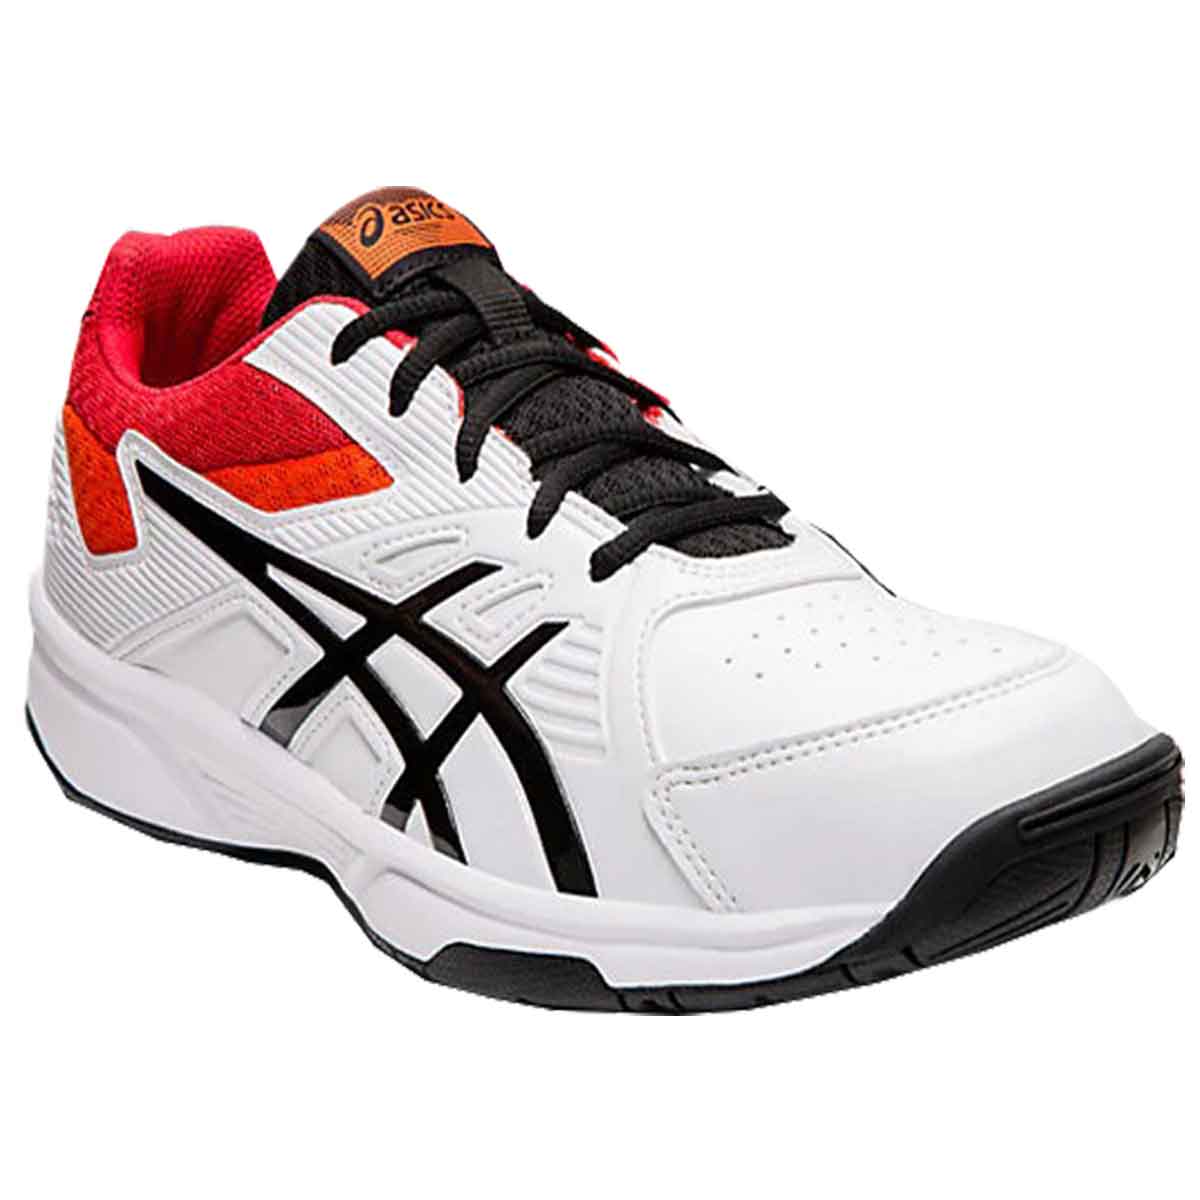 asics squash shoes online